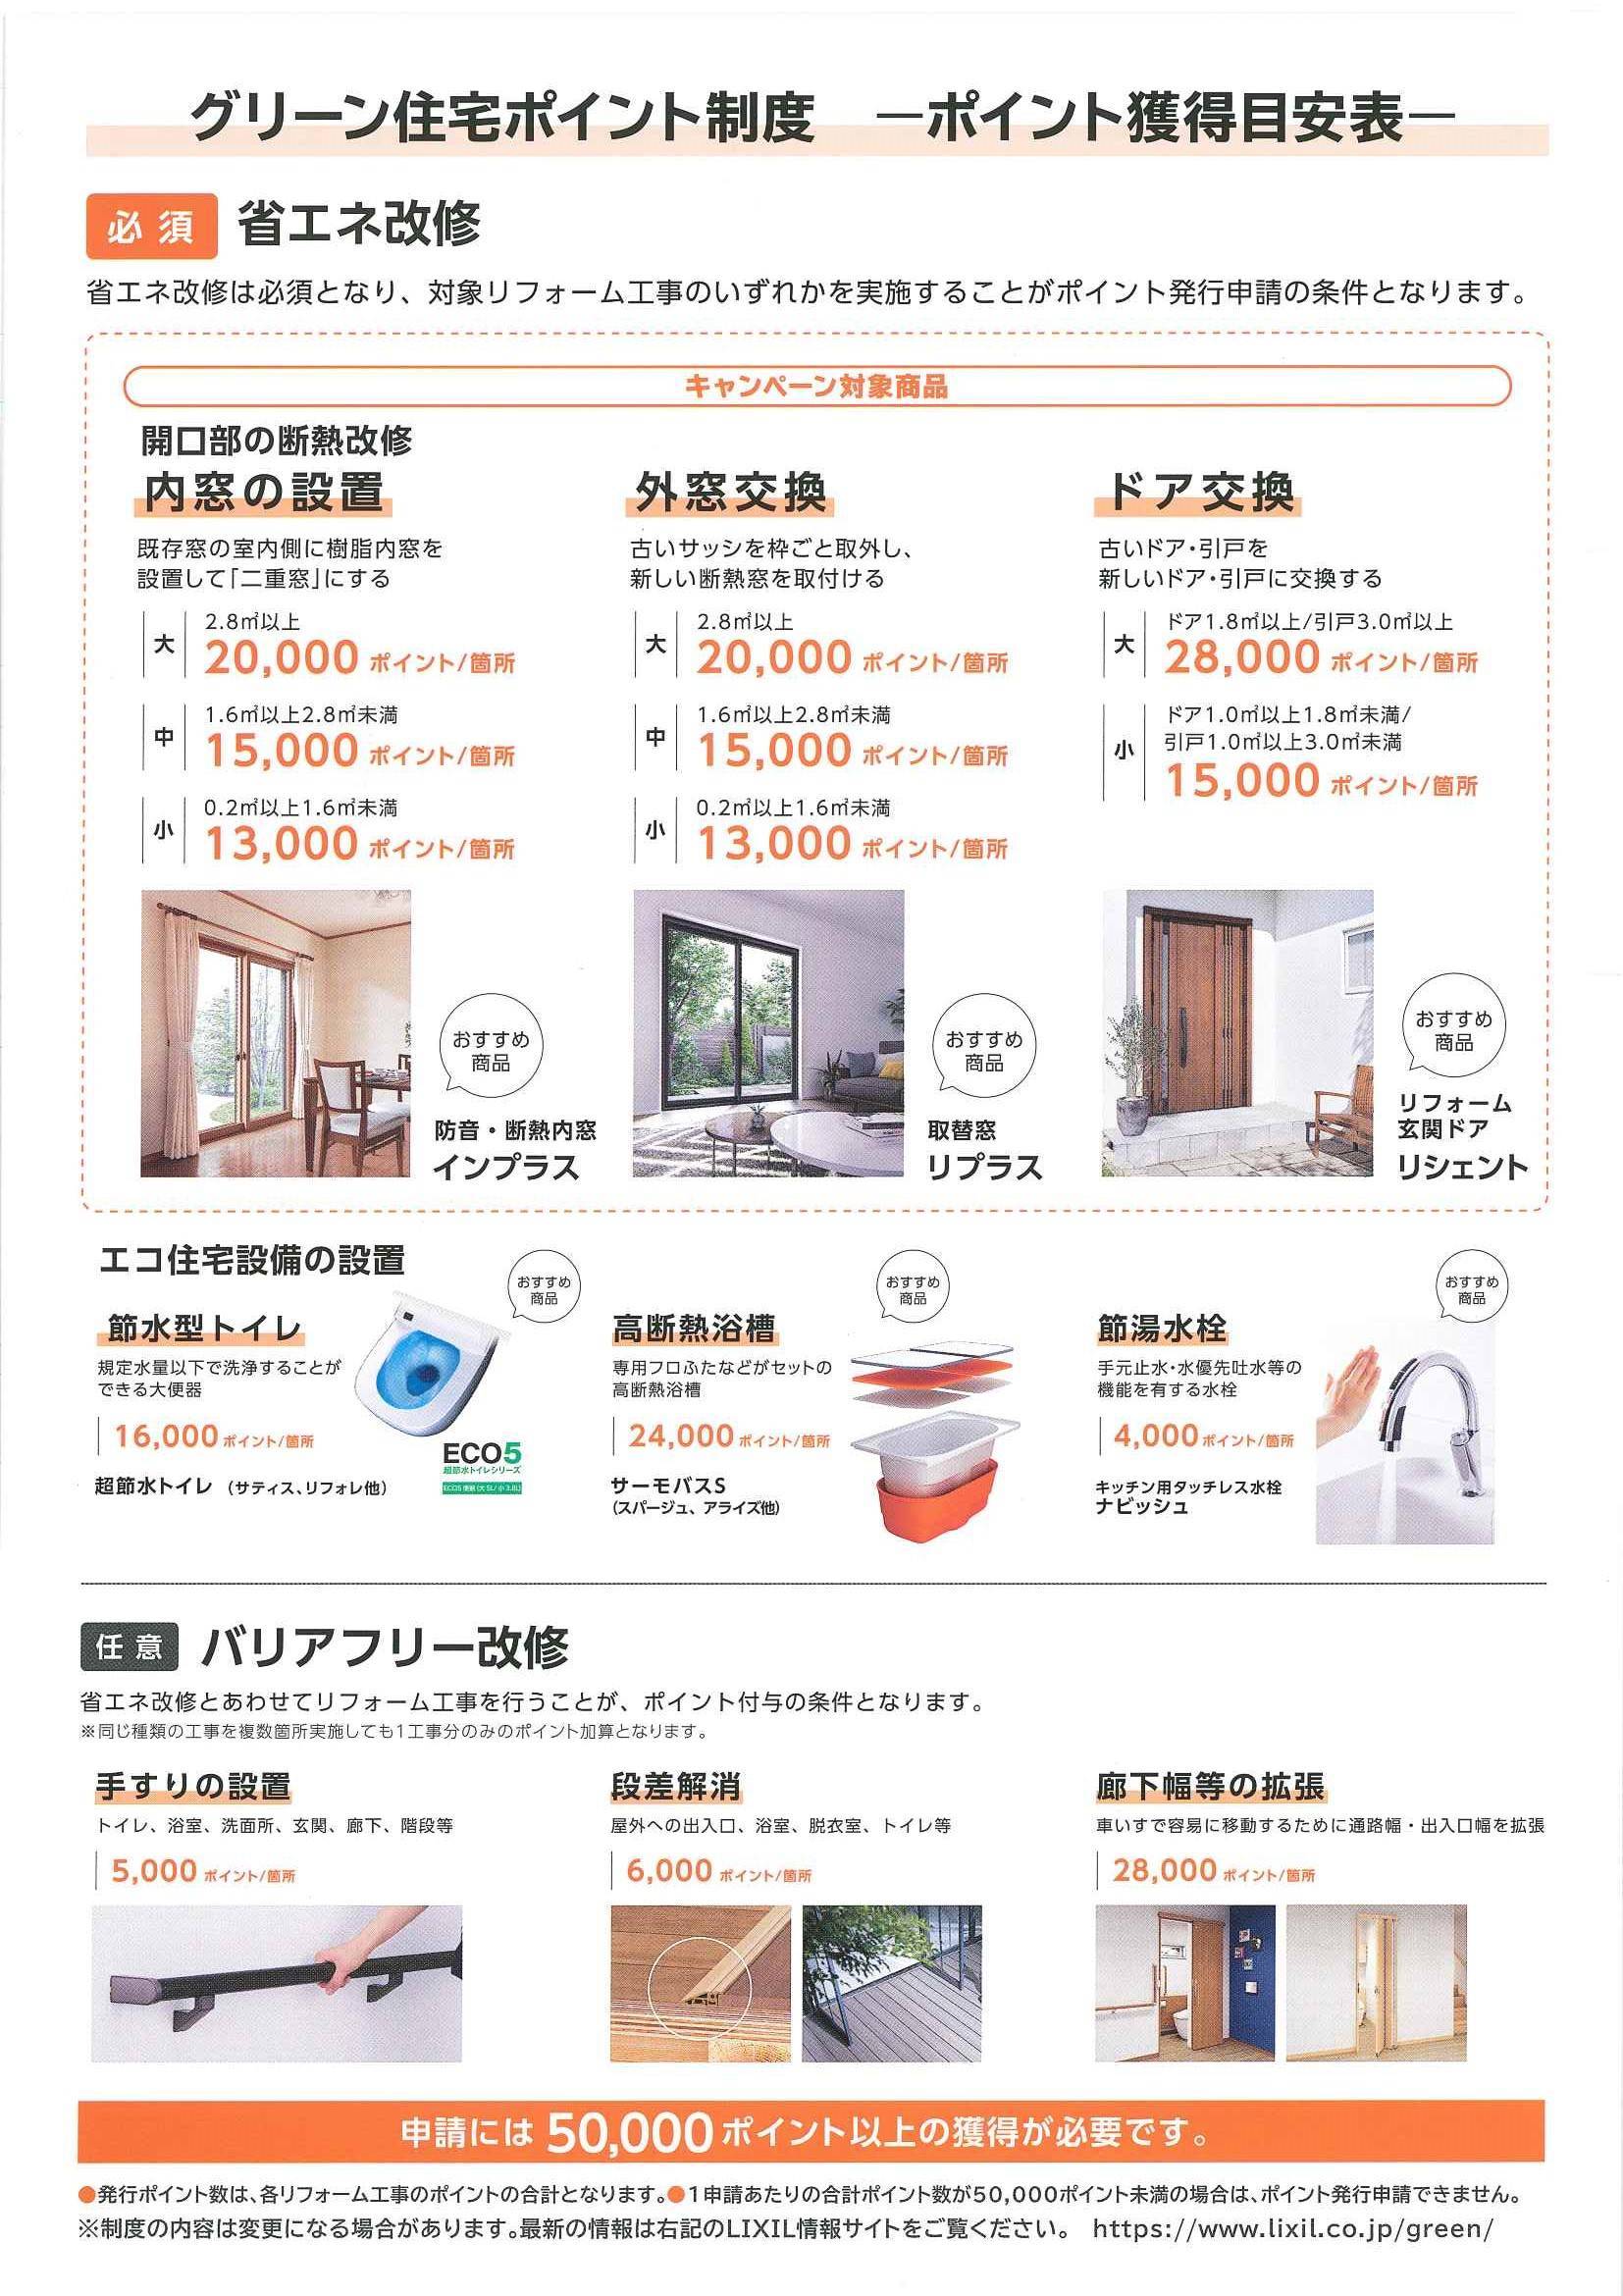 グリーン住宅ポイント制度～ポイント獲得目安表～ 横浜トーヨー住器のイベントキャンペーン 写真1